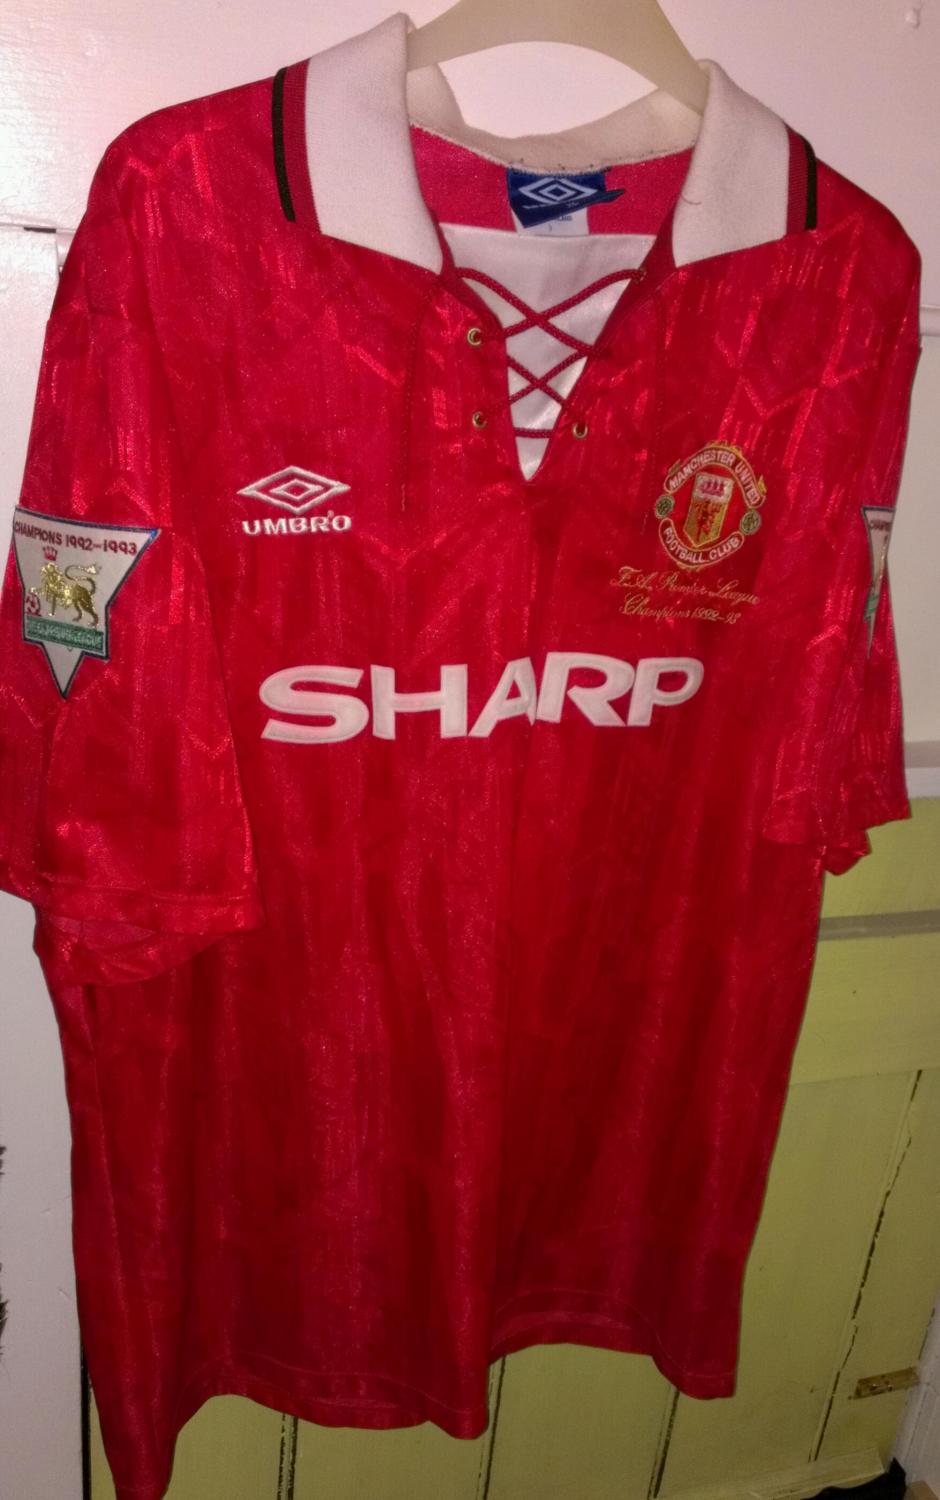 Sharpe #5 Manchester United 1993-1996 Home Football Nameset for shirt 